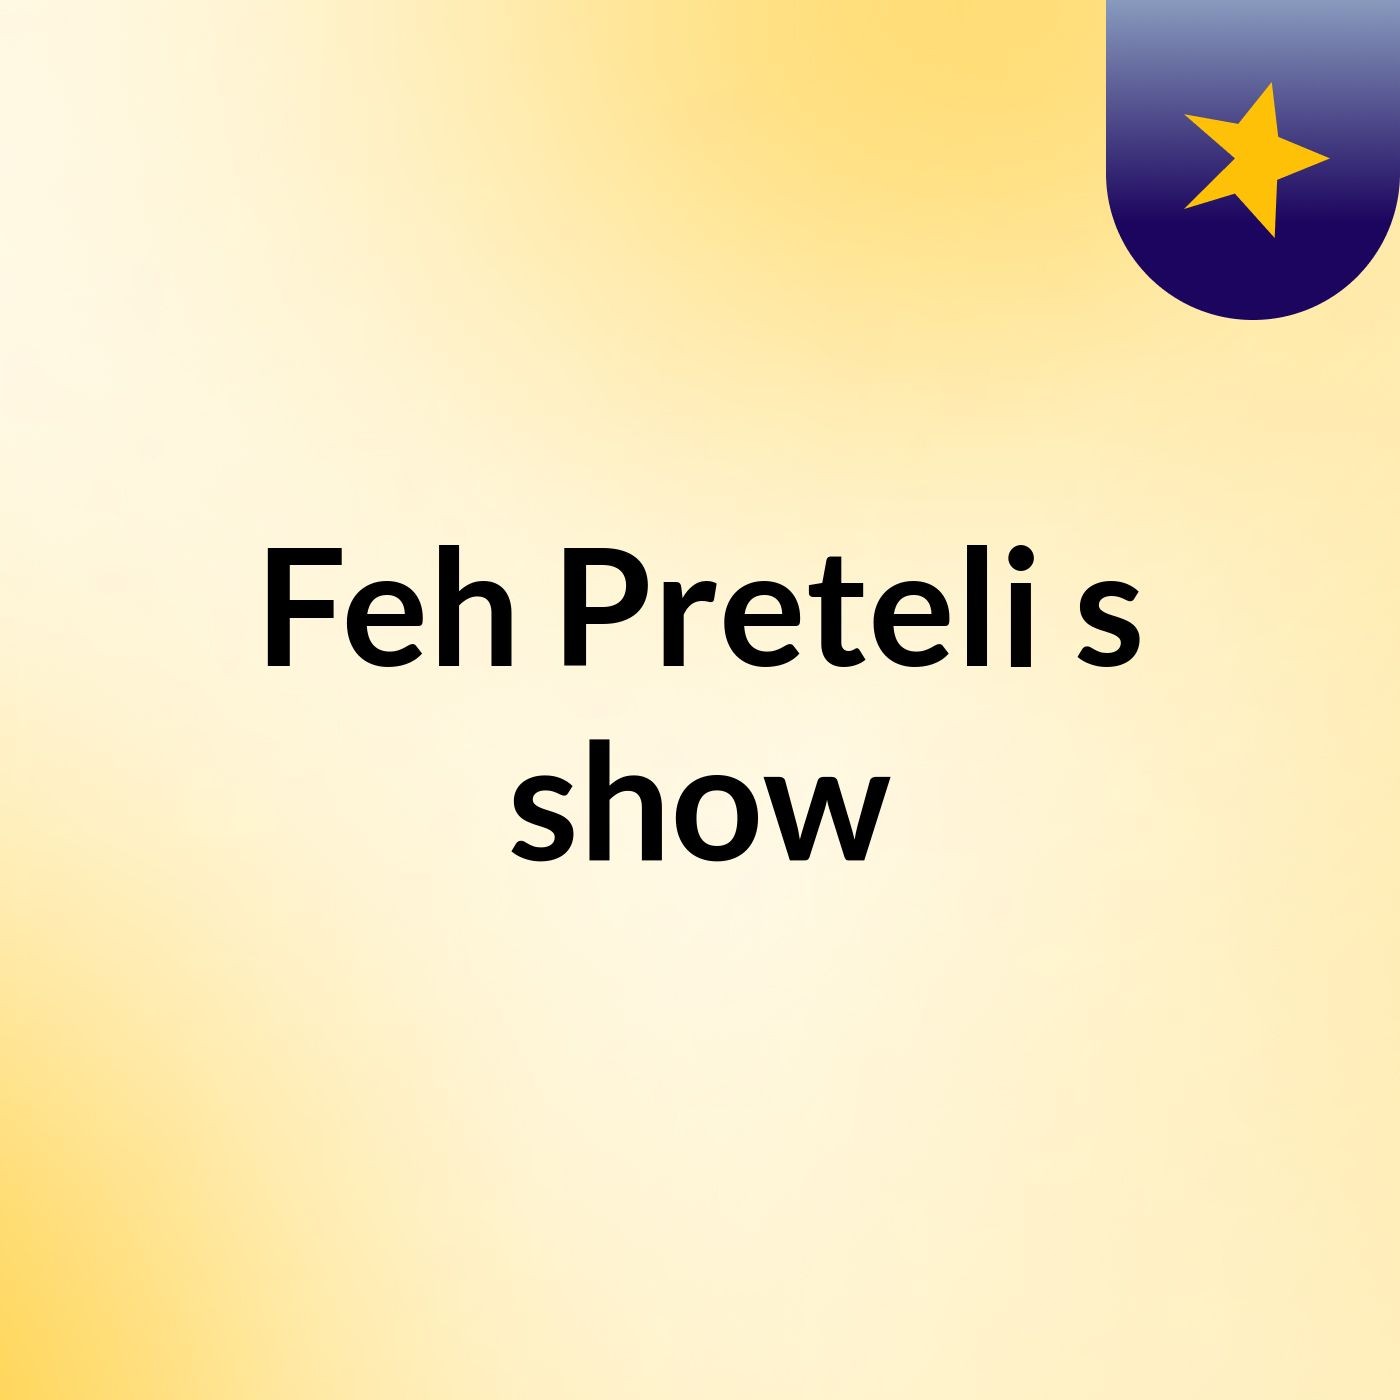 Feh Preteli's show